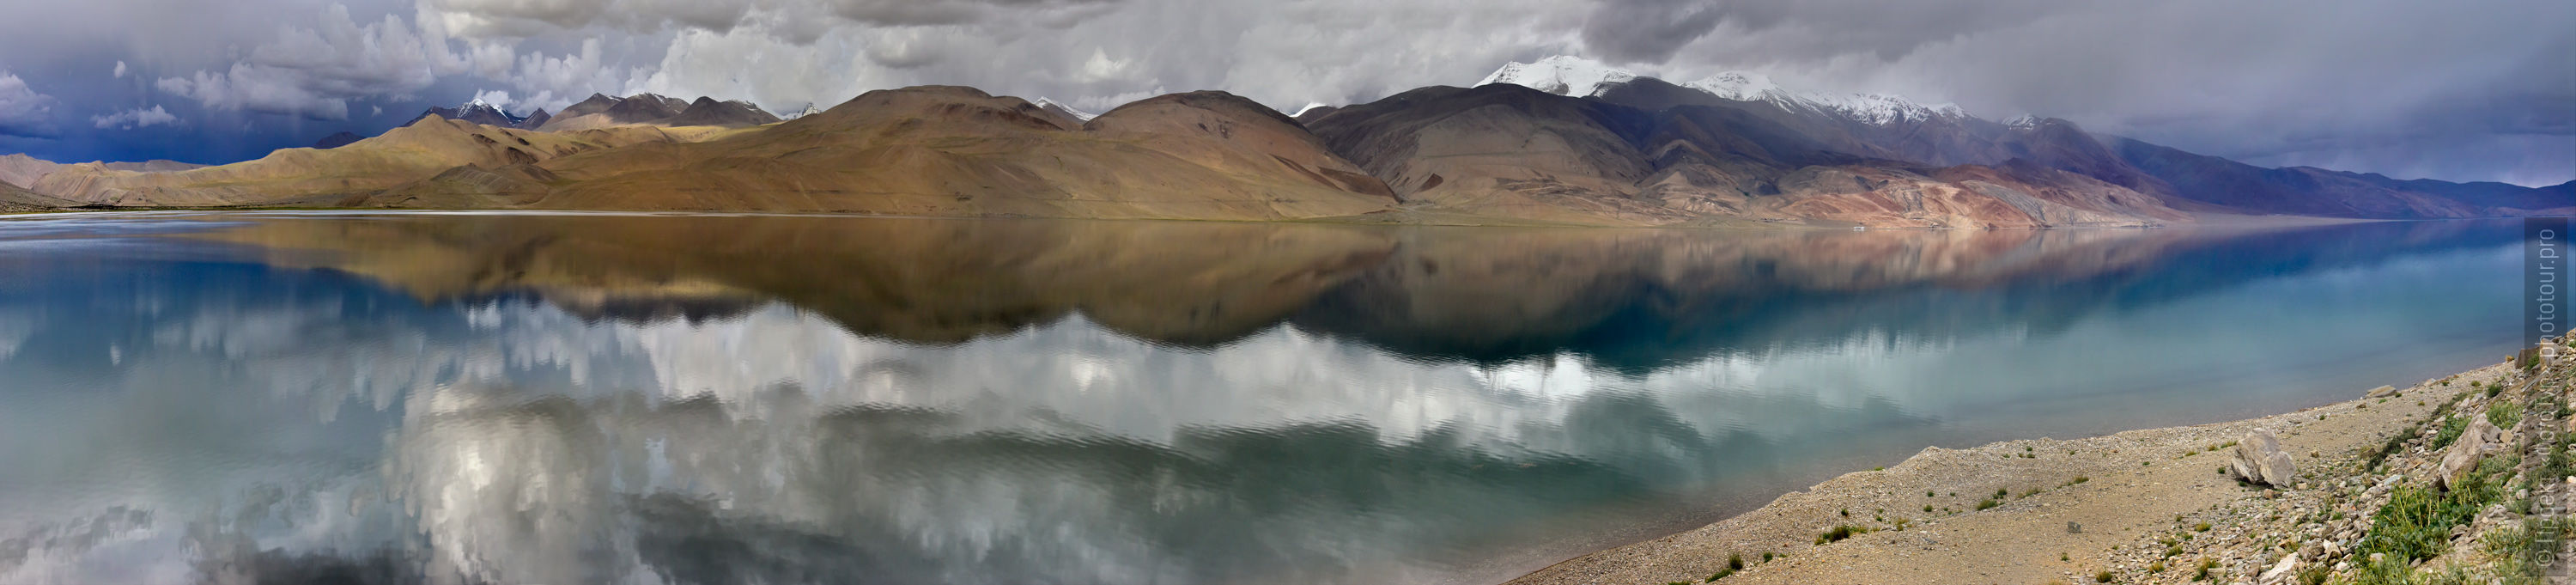 Evening on Lake Tso Moriri. Expedition Tibet Lake-2: Pangong, Tso Moriri, Tso Kar, Tso Startsapak, Leh-Manali highway.